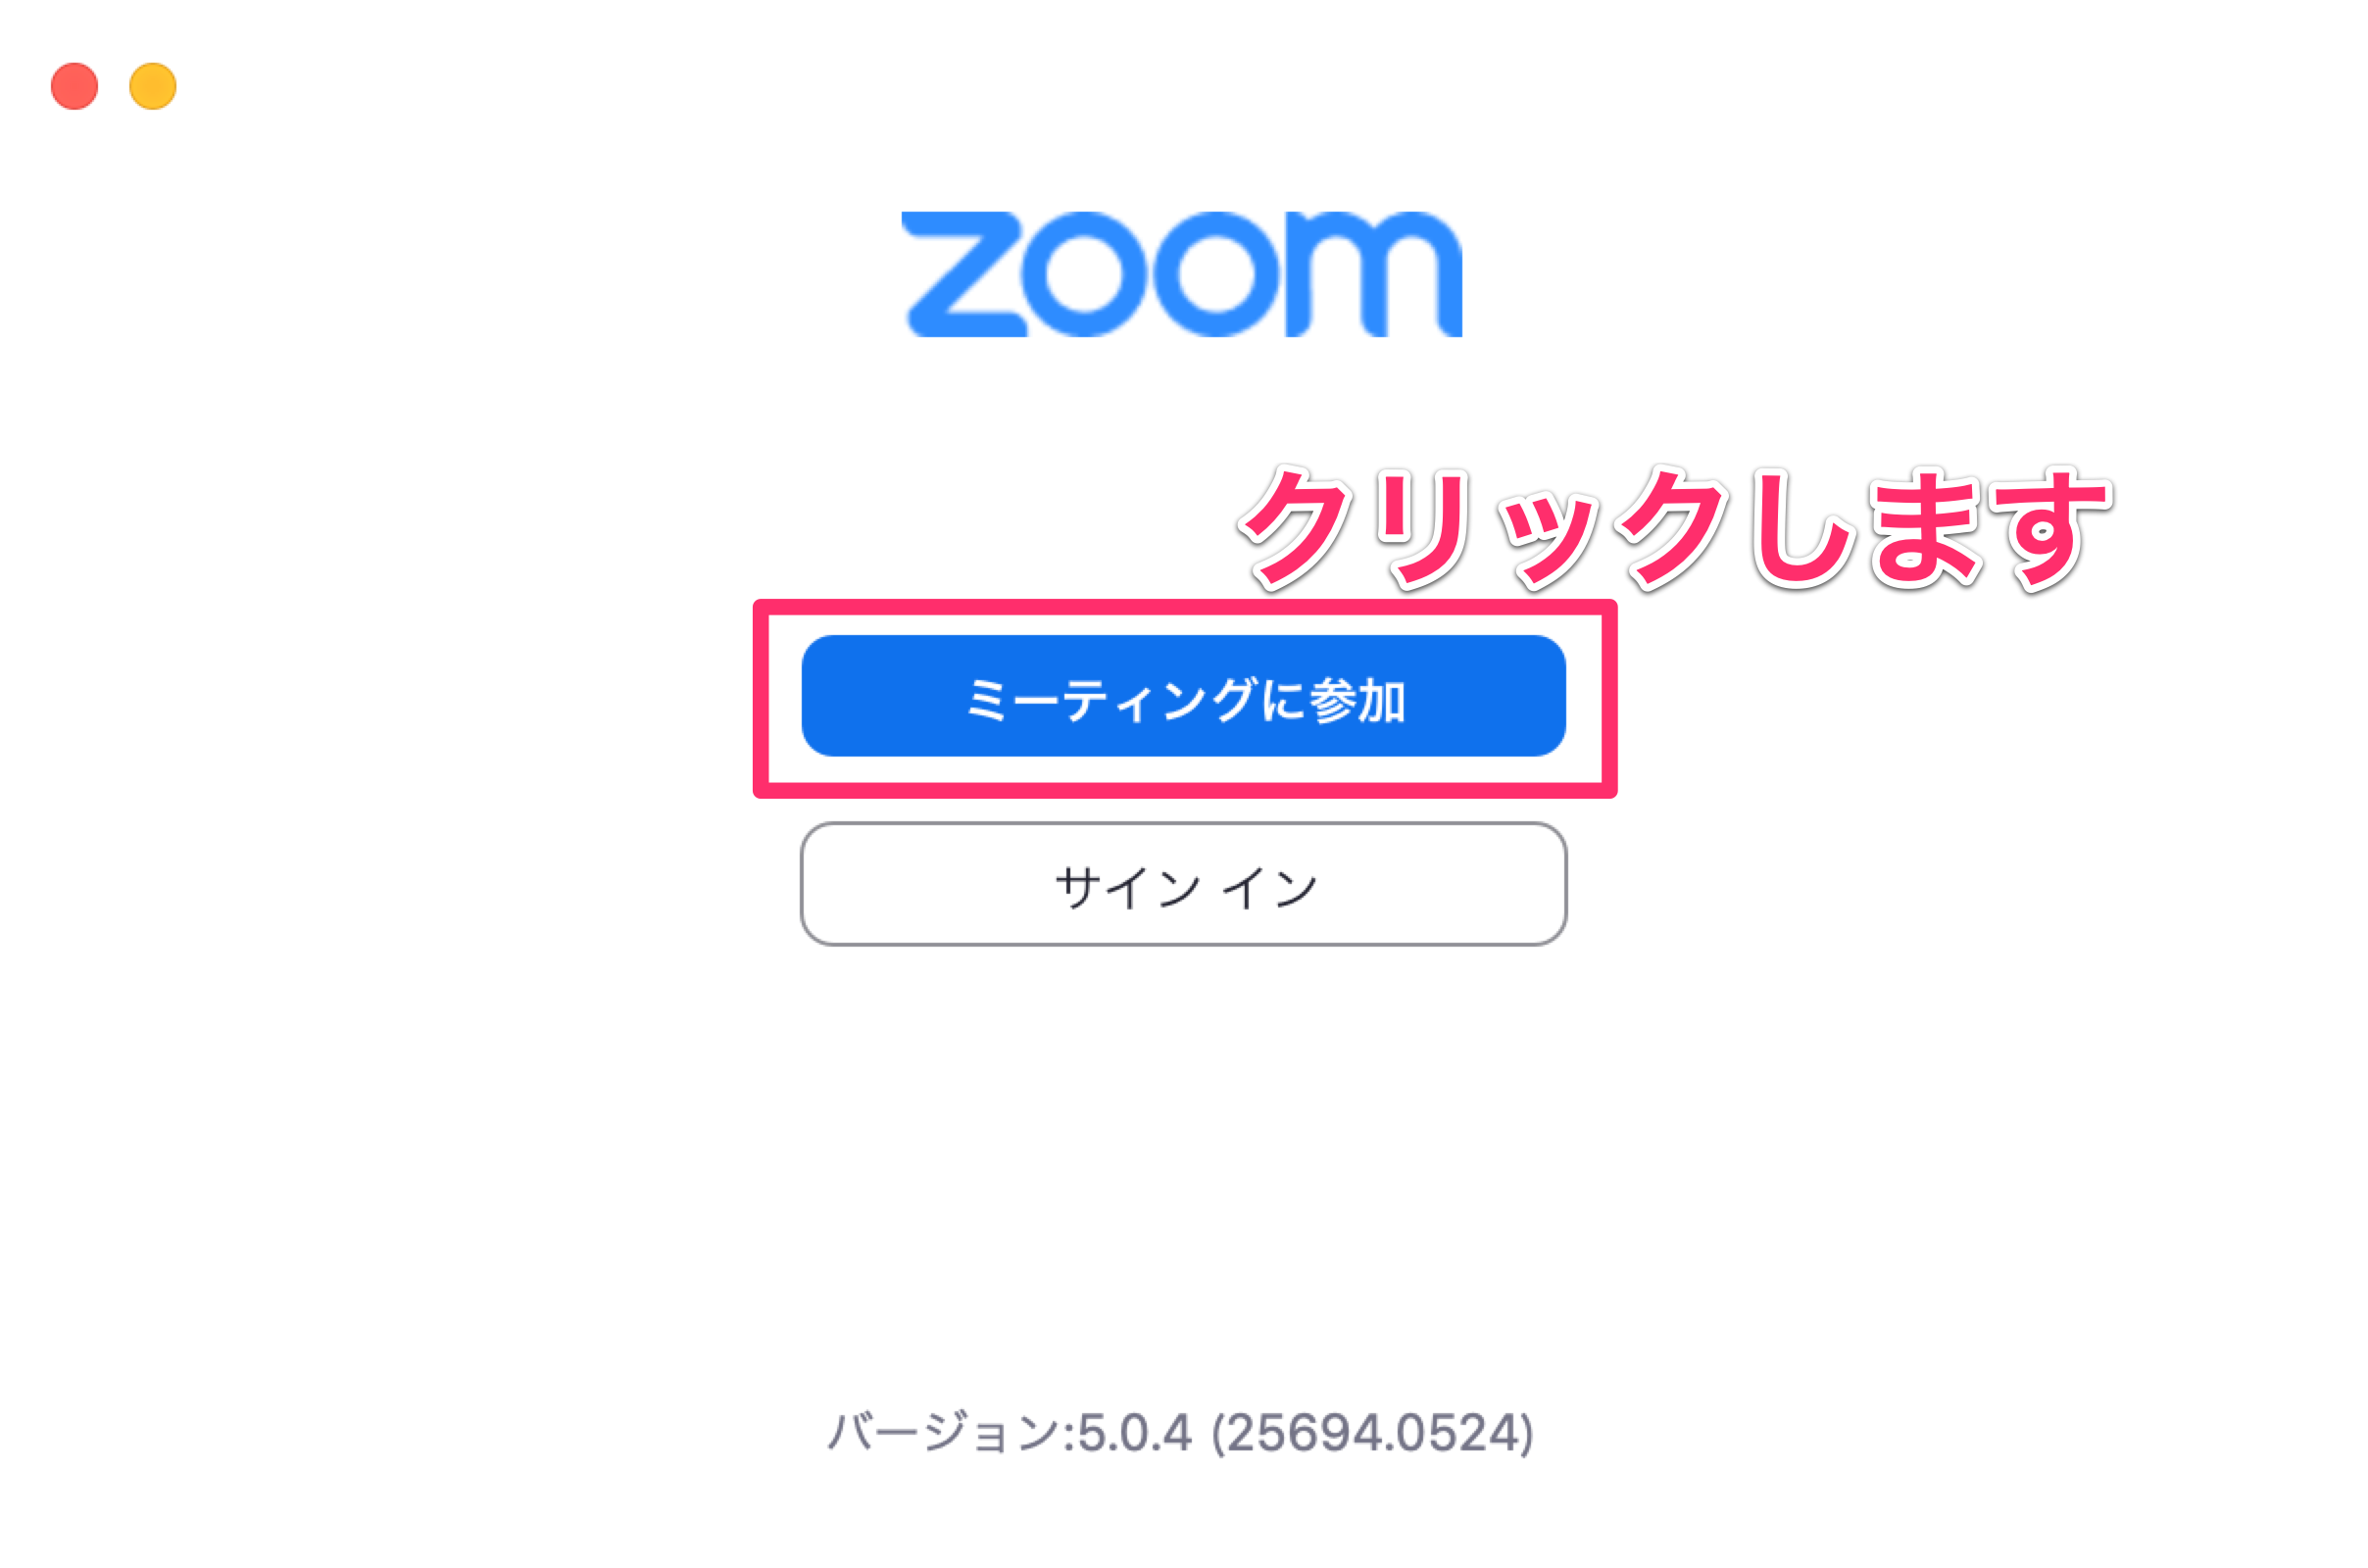 Zoom macOS 09